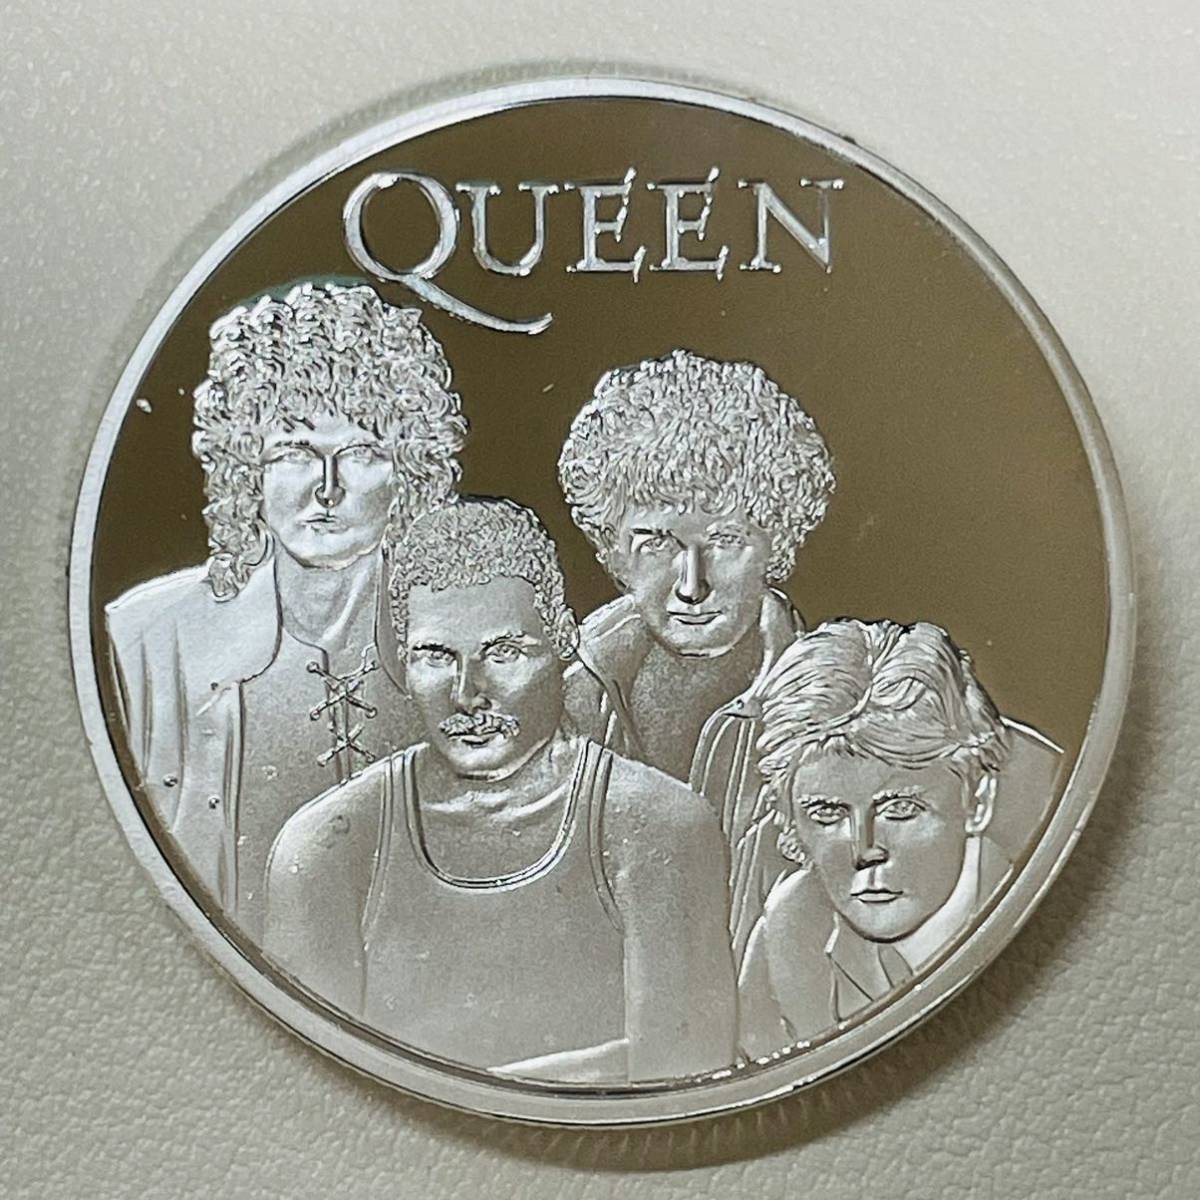 Queen クイーン　ロックバンド　マーキュリー　イギリス　アーティスト　記念メタル　海外　コイン　硬貨　収納ケースあり_画像2